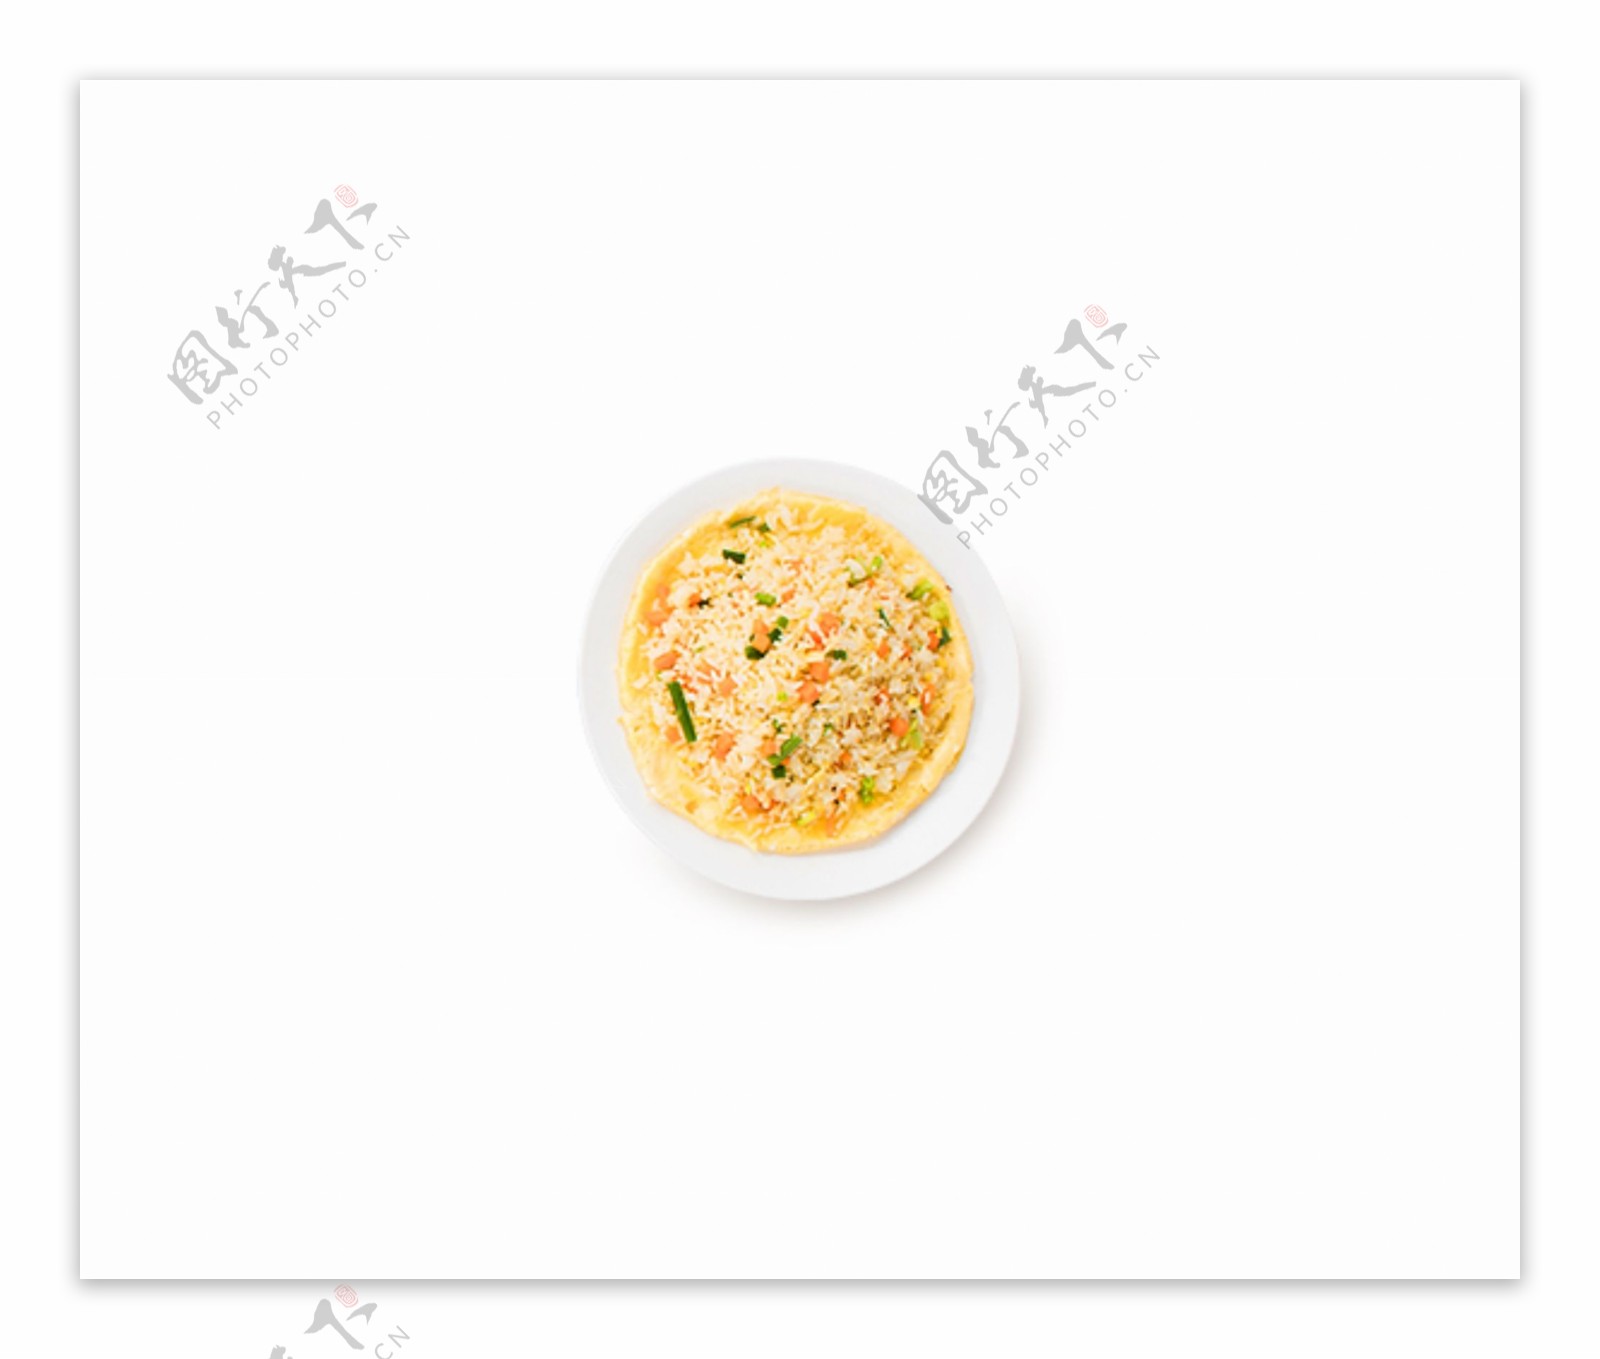 一盘鸡蛋饼炒米饭蔬菜水果盘子俯视图